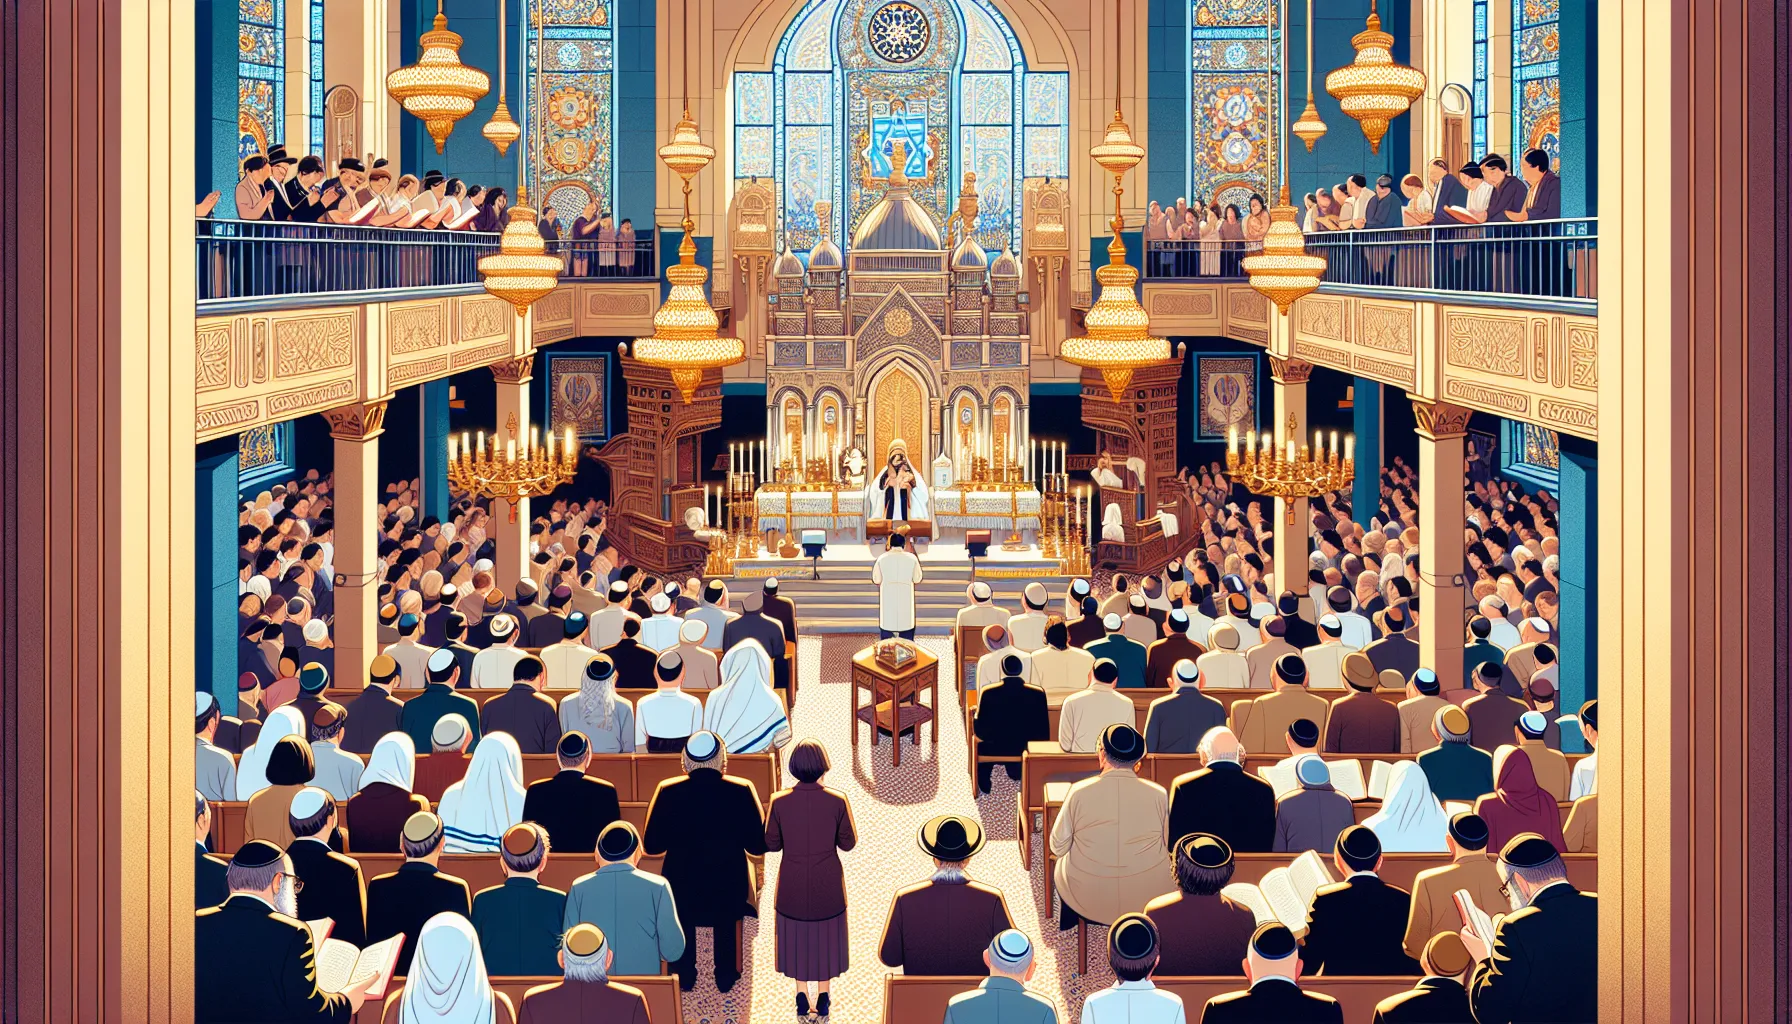 Imagen ilustrativa de una sinagoga llena de personas que participan en una ceremonia de oración durante Yom Kippur